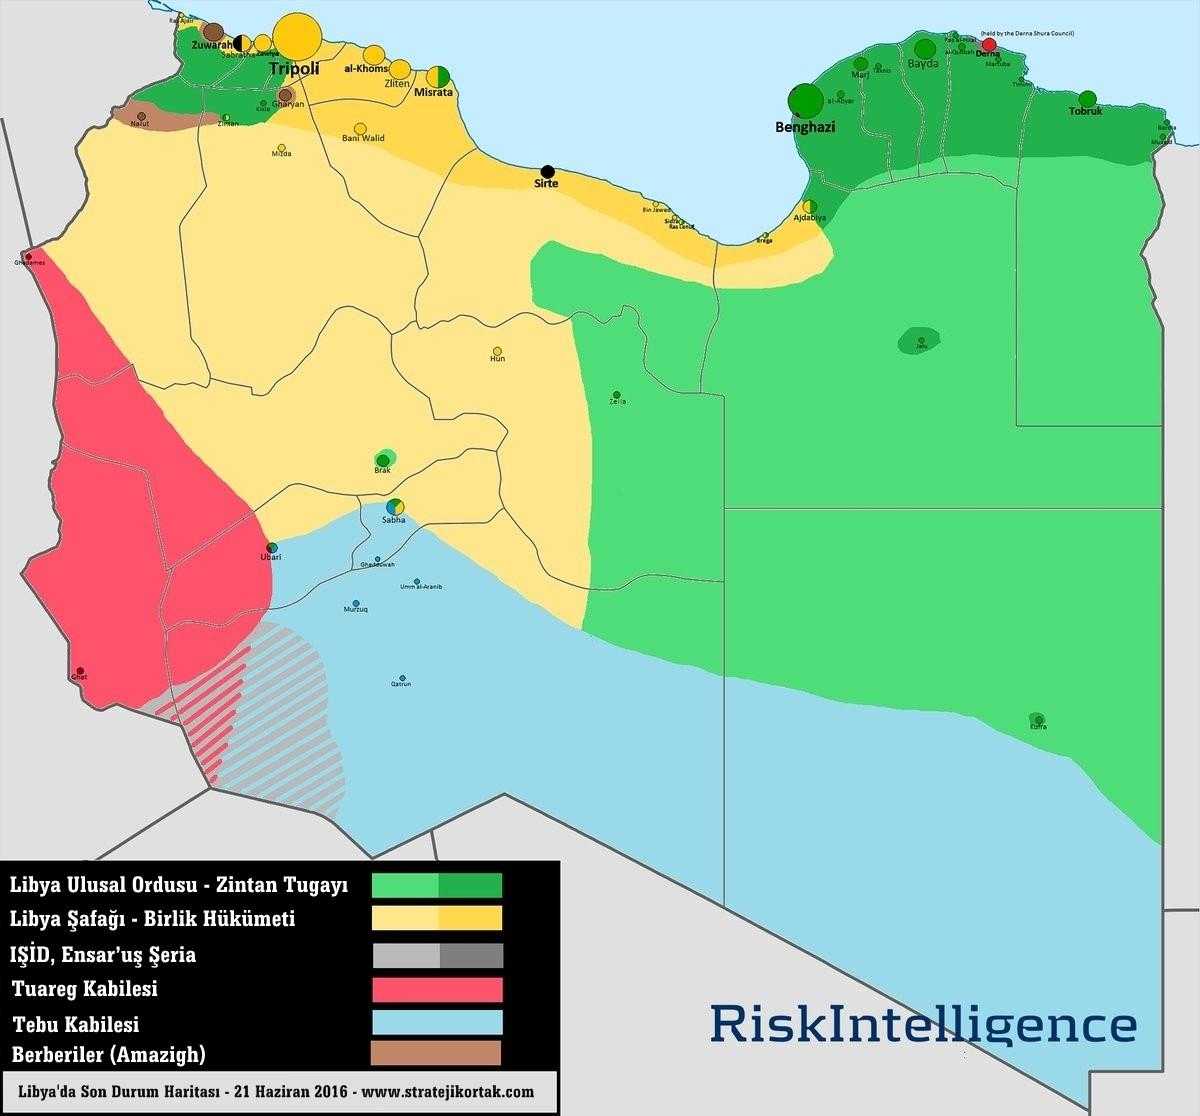 Libya Son Durum Haritası (21.06.2016)